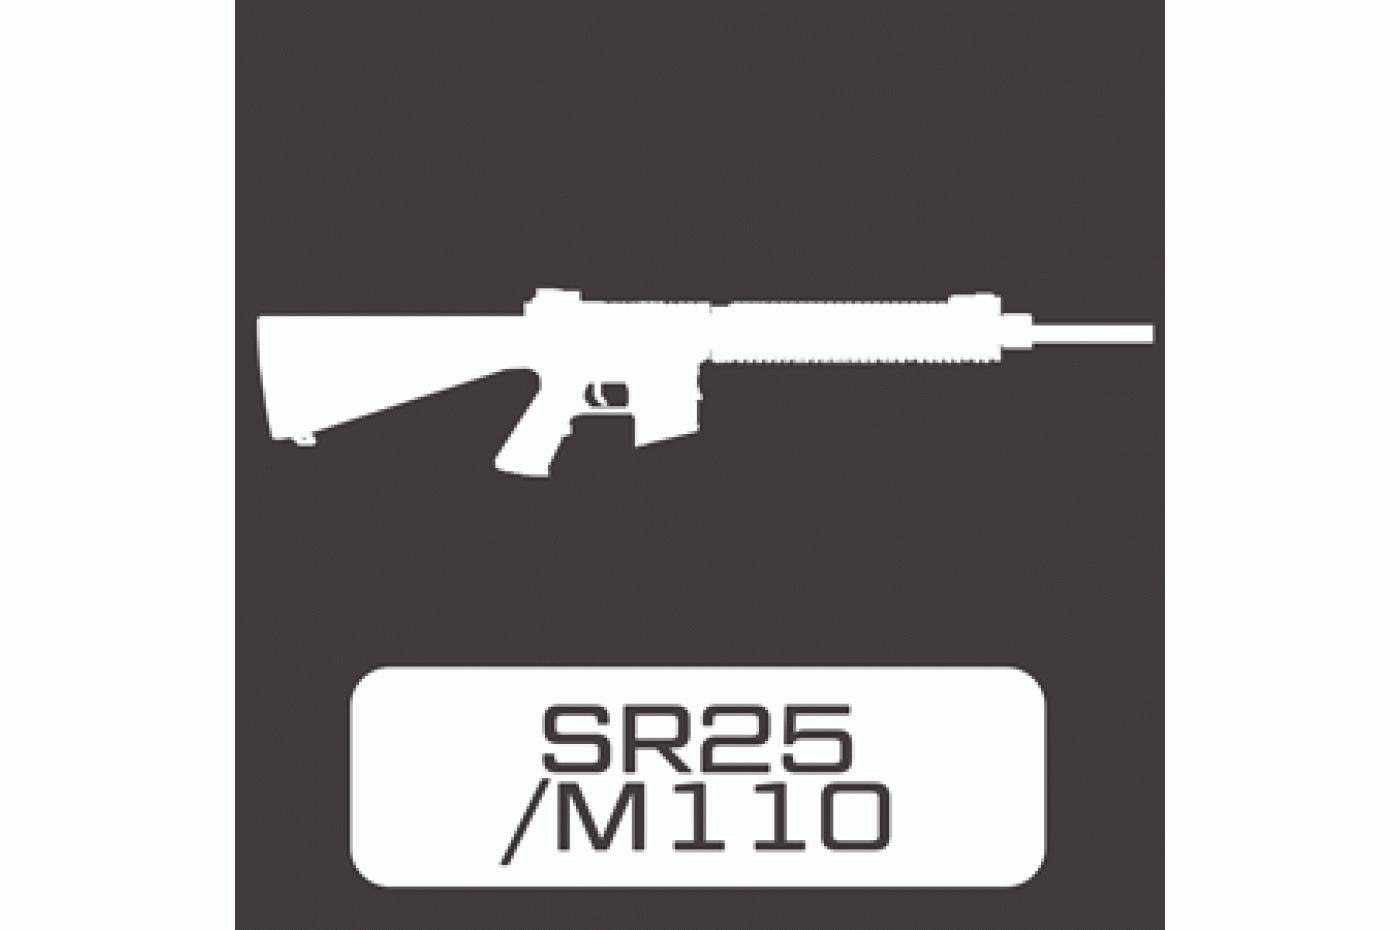 SR25 / M110